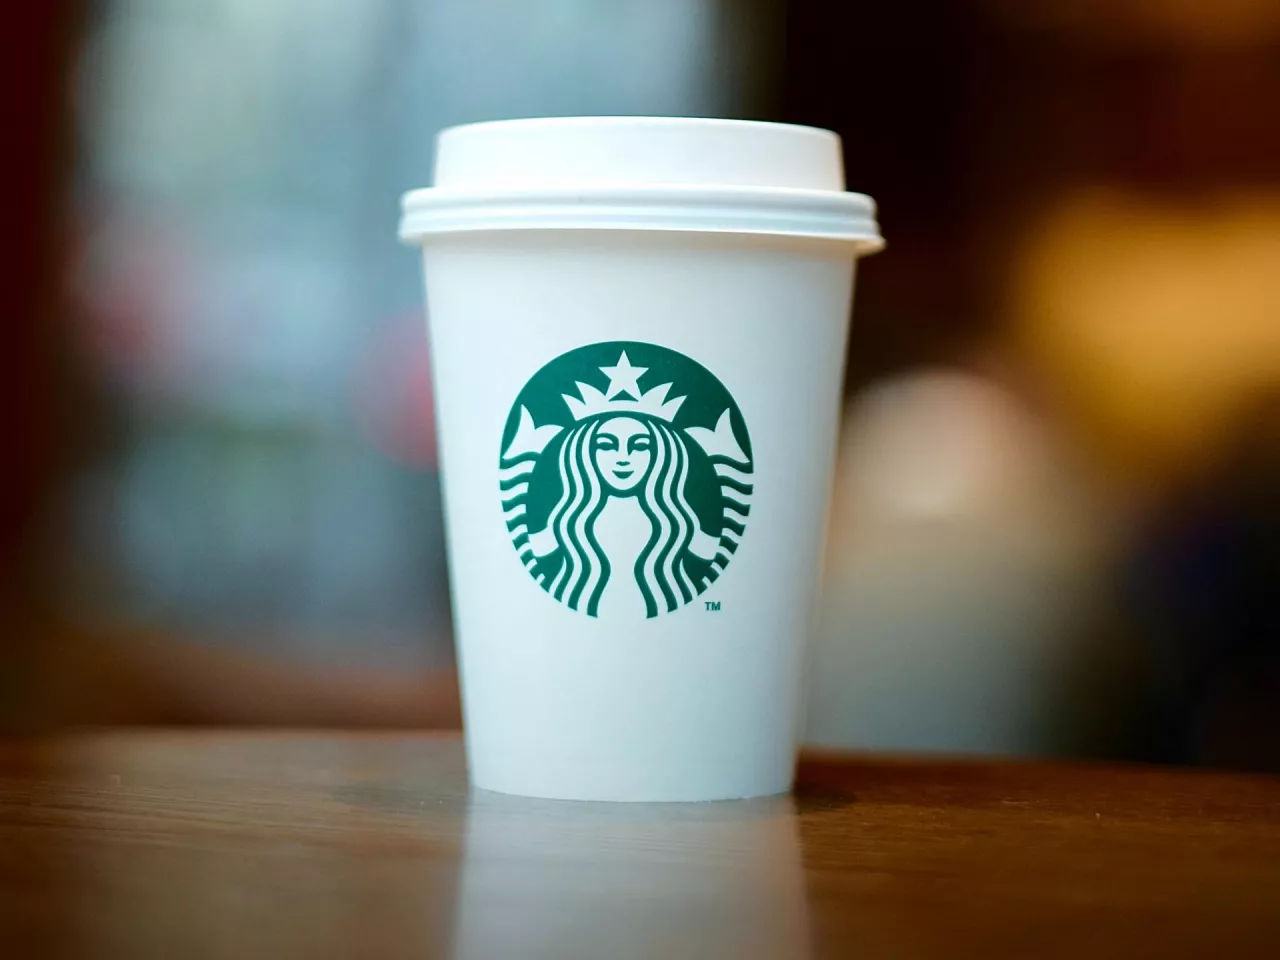 Starbucks wycofuje się z rosyjskiego rynku (fot. Ricko Pan/Unsplash)